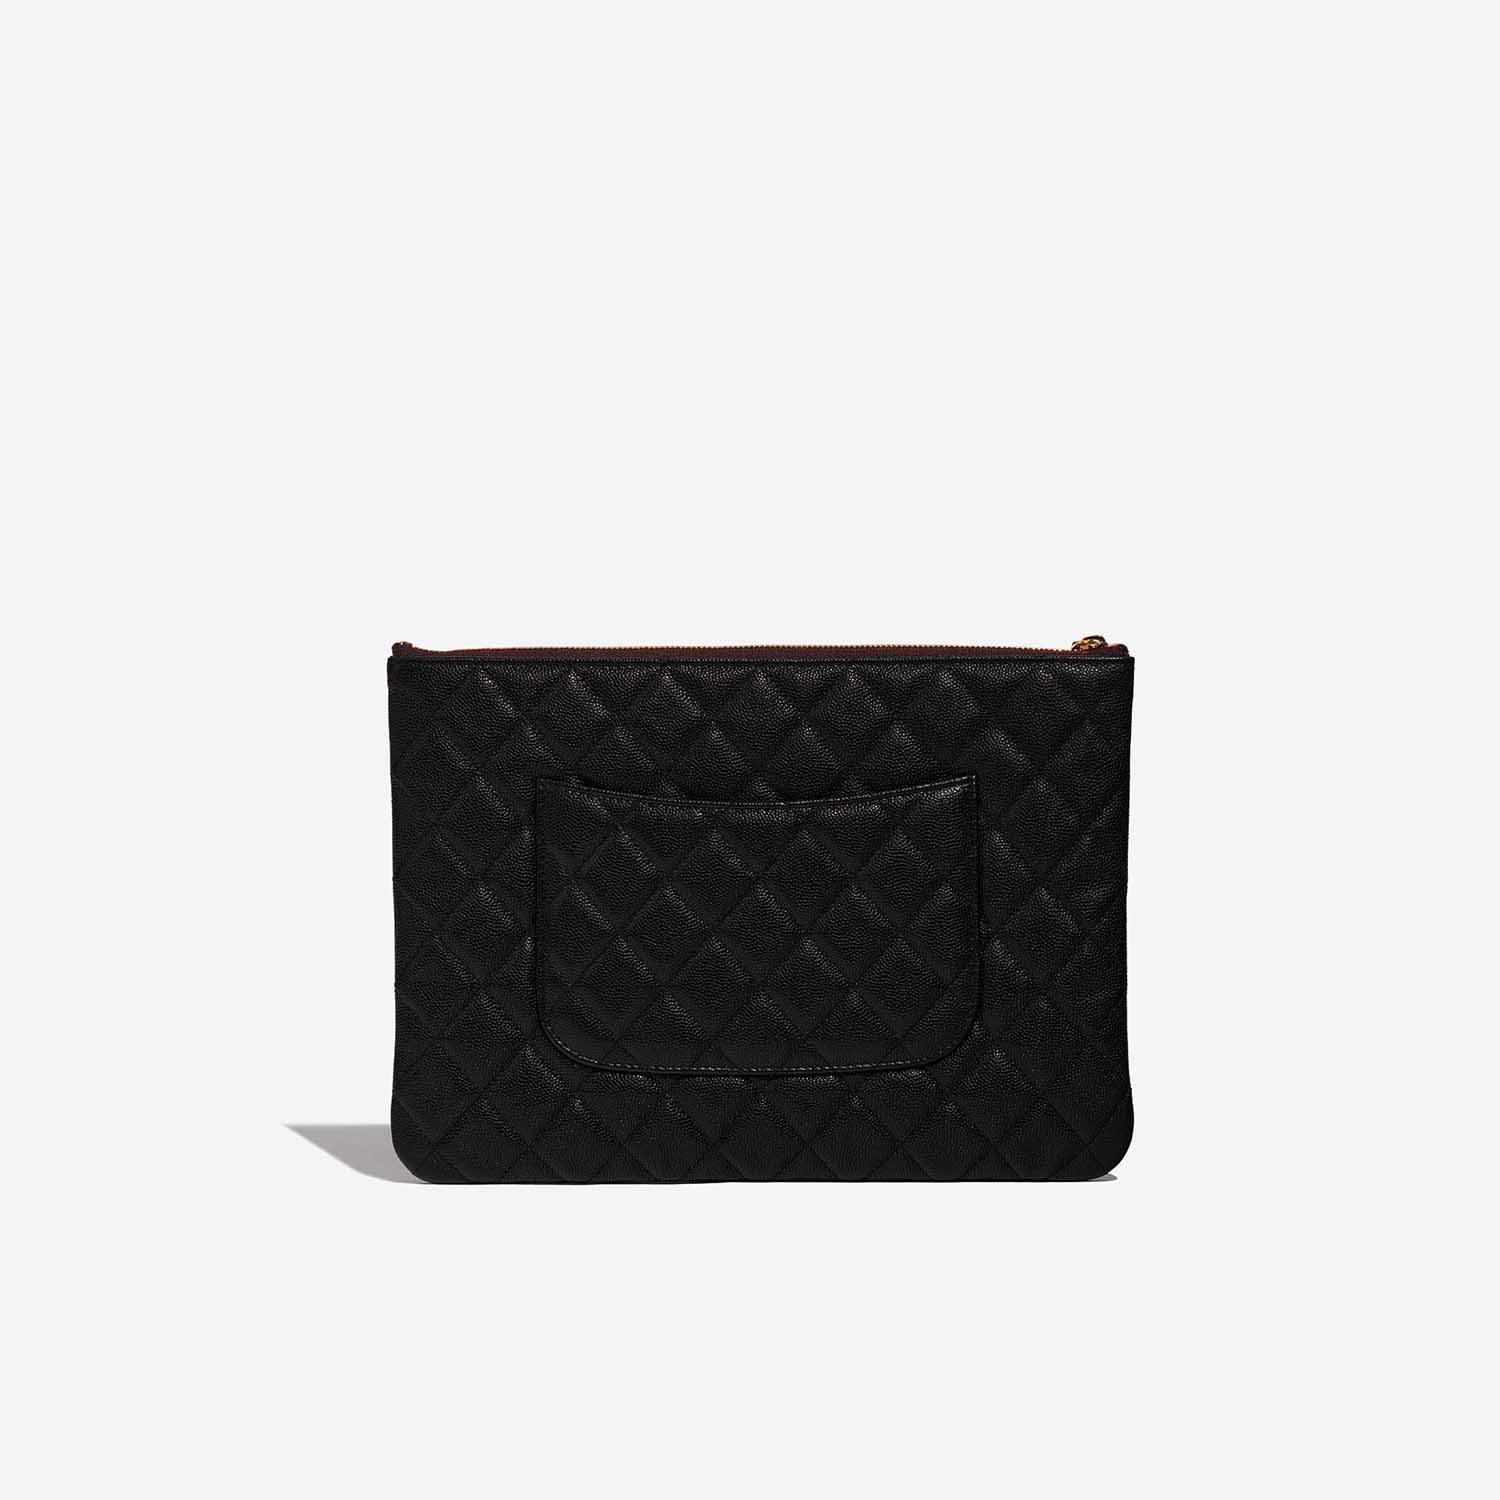 Sac Chanel d'occasion Classique Pochette Caviar Noir Noir Retour | Vendez votre sac de créateur sur Saclab.com